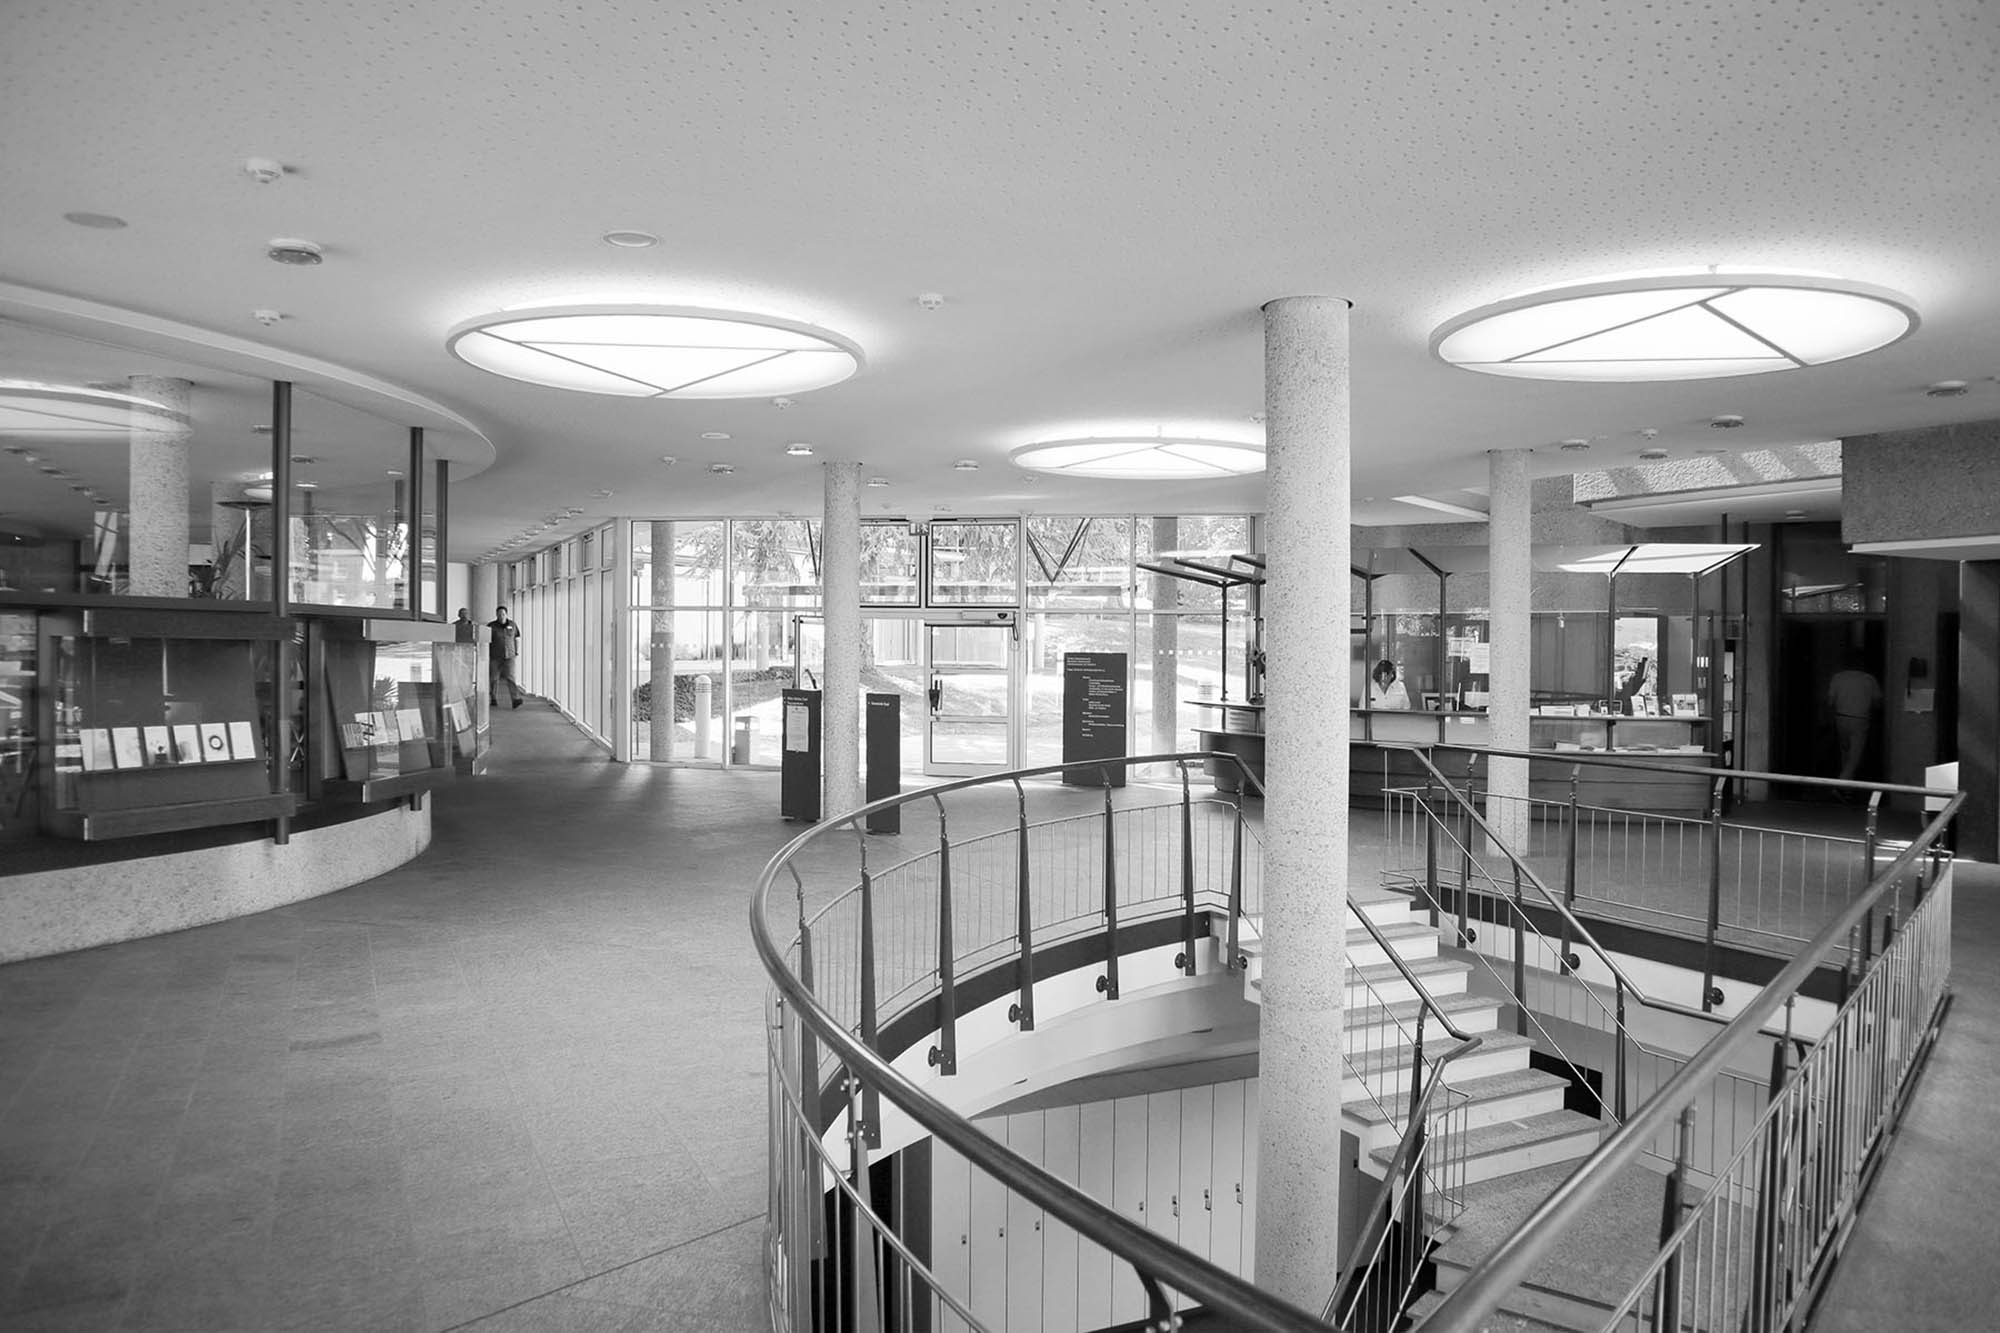 Das Foyer gibt einen Eindruck vom inneren Aufbau mit Split-Level-Galerien, die den zentralen Lesesaal ringförmig umfassen.